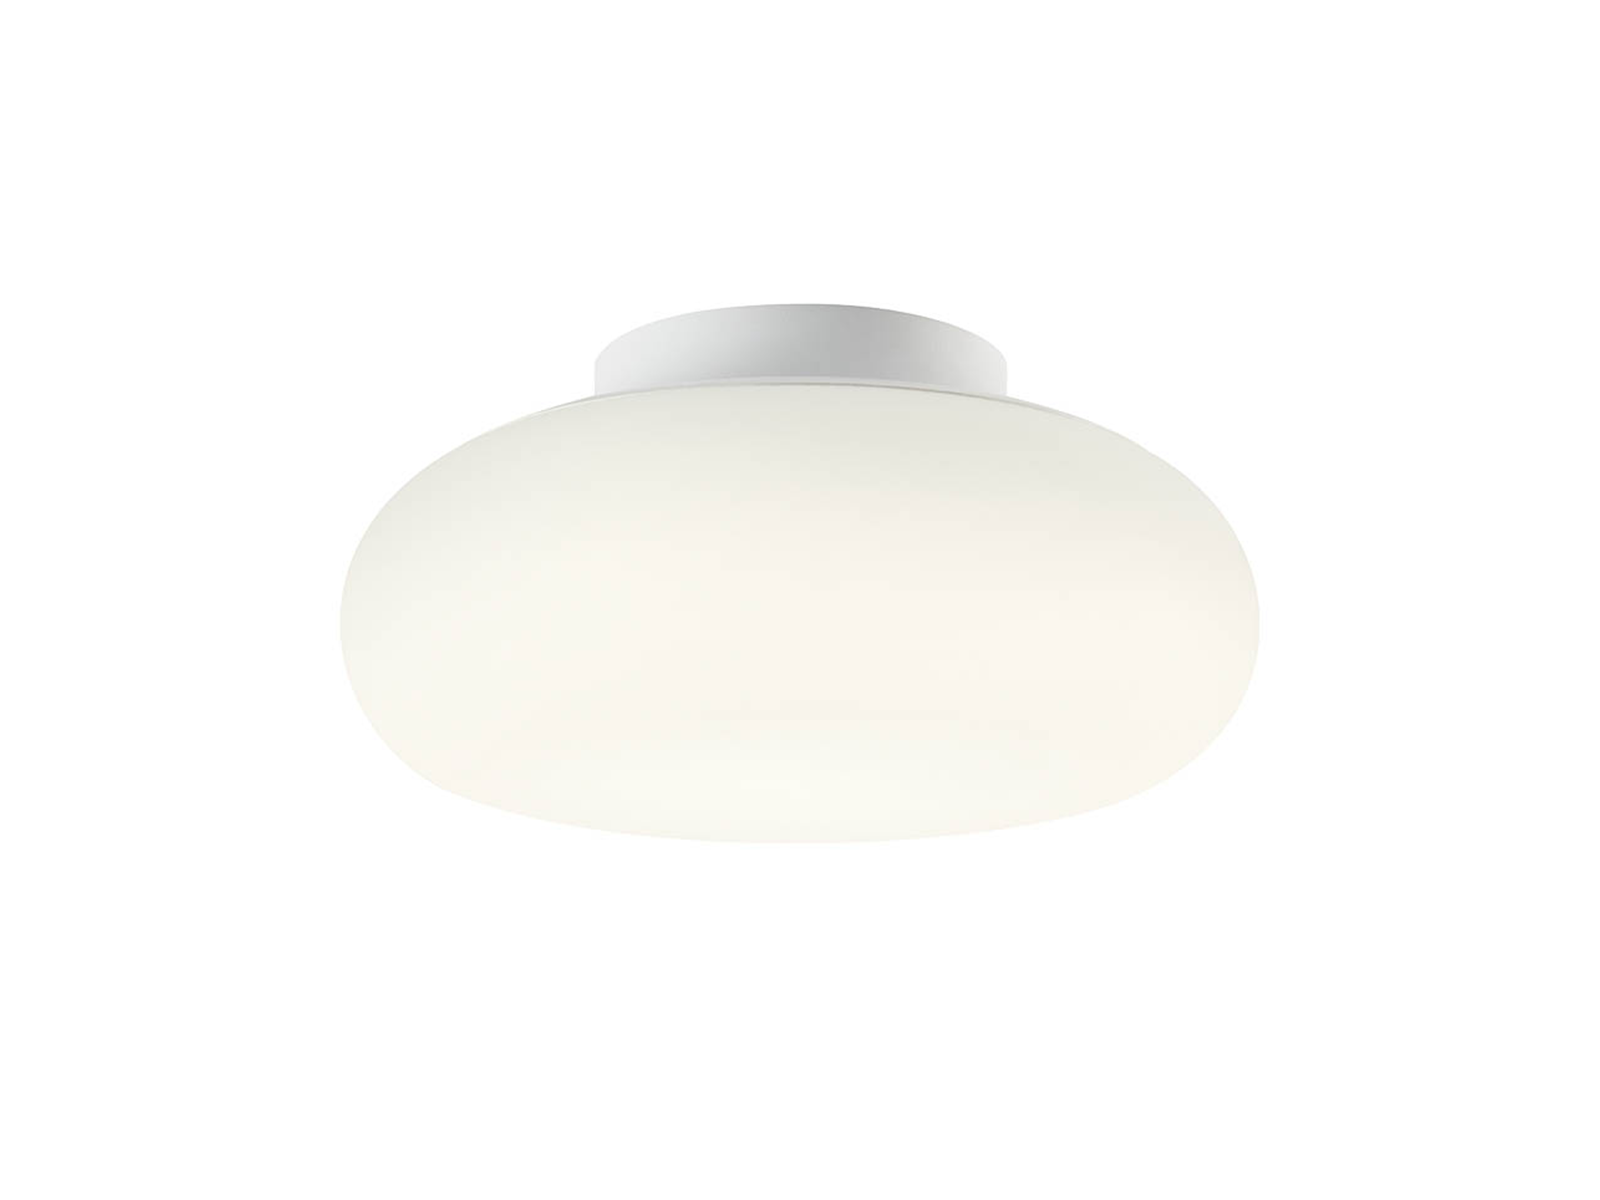 Stropní LED svítidlo Ubis pískově bílé, 25W, 3000K, 4000K, 5000K, ø35cm